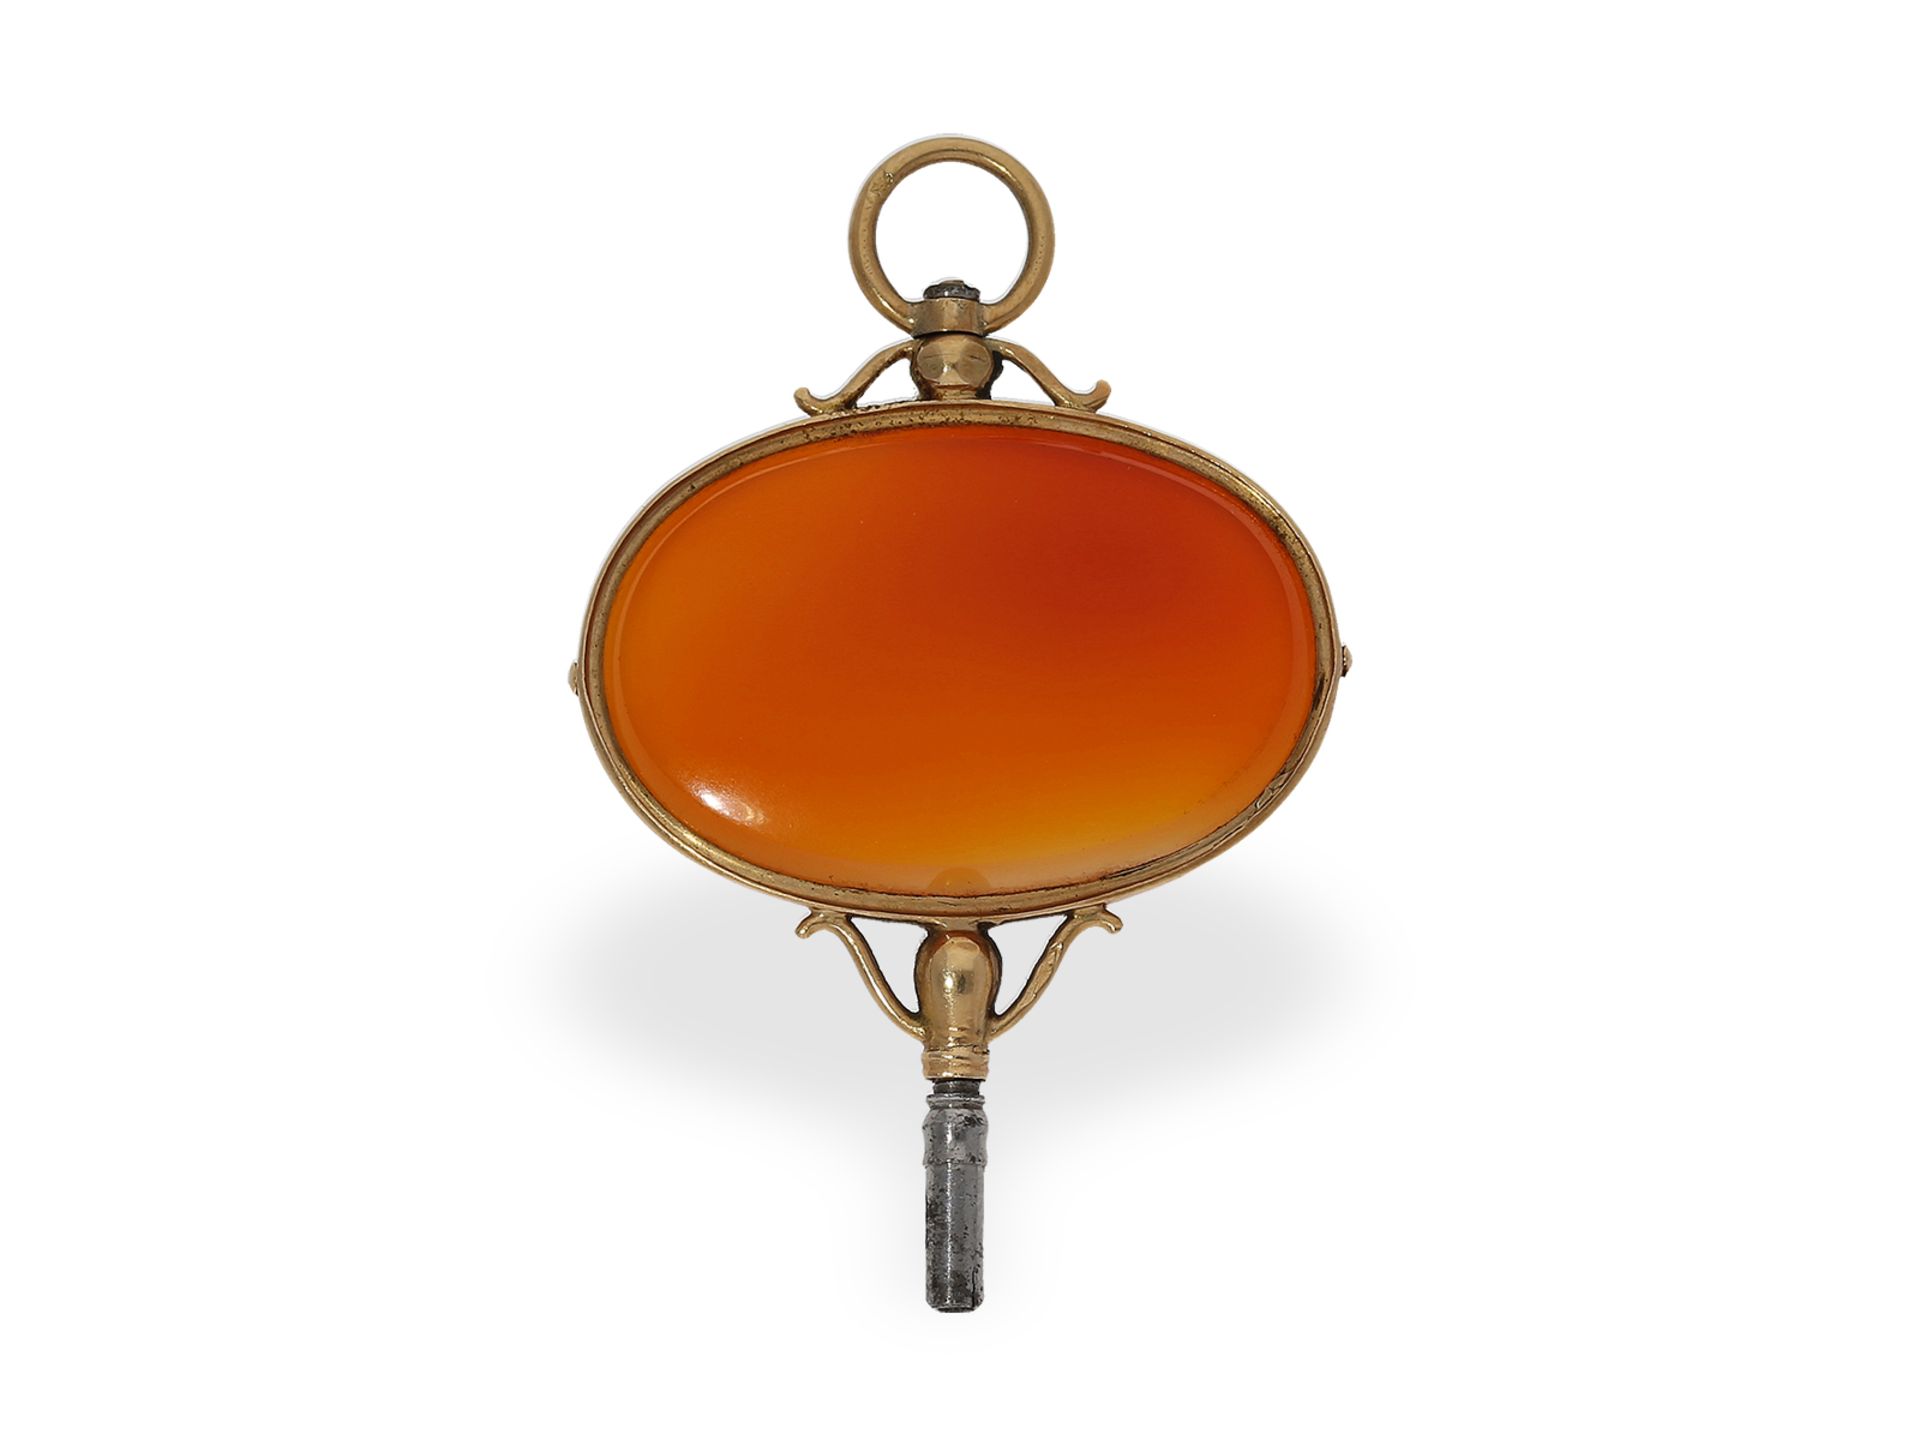 Uhrenschlüssel: prächtiger goldener Uhrenschlüssel mit Karneol-Scheibe, ca. 1820 - Bild 2 aus 2